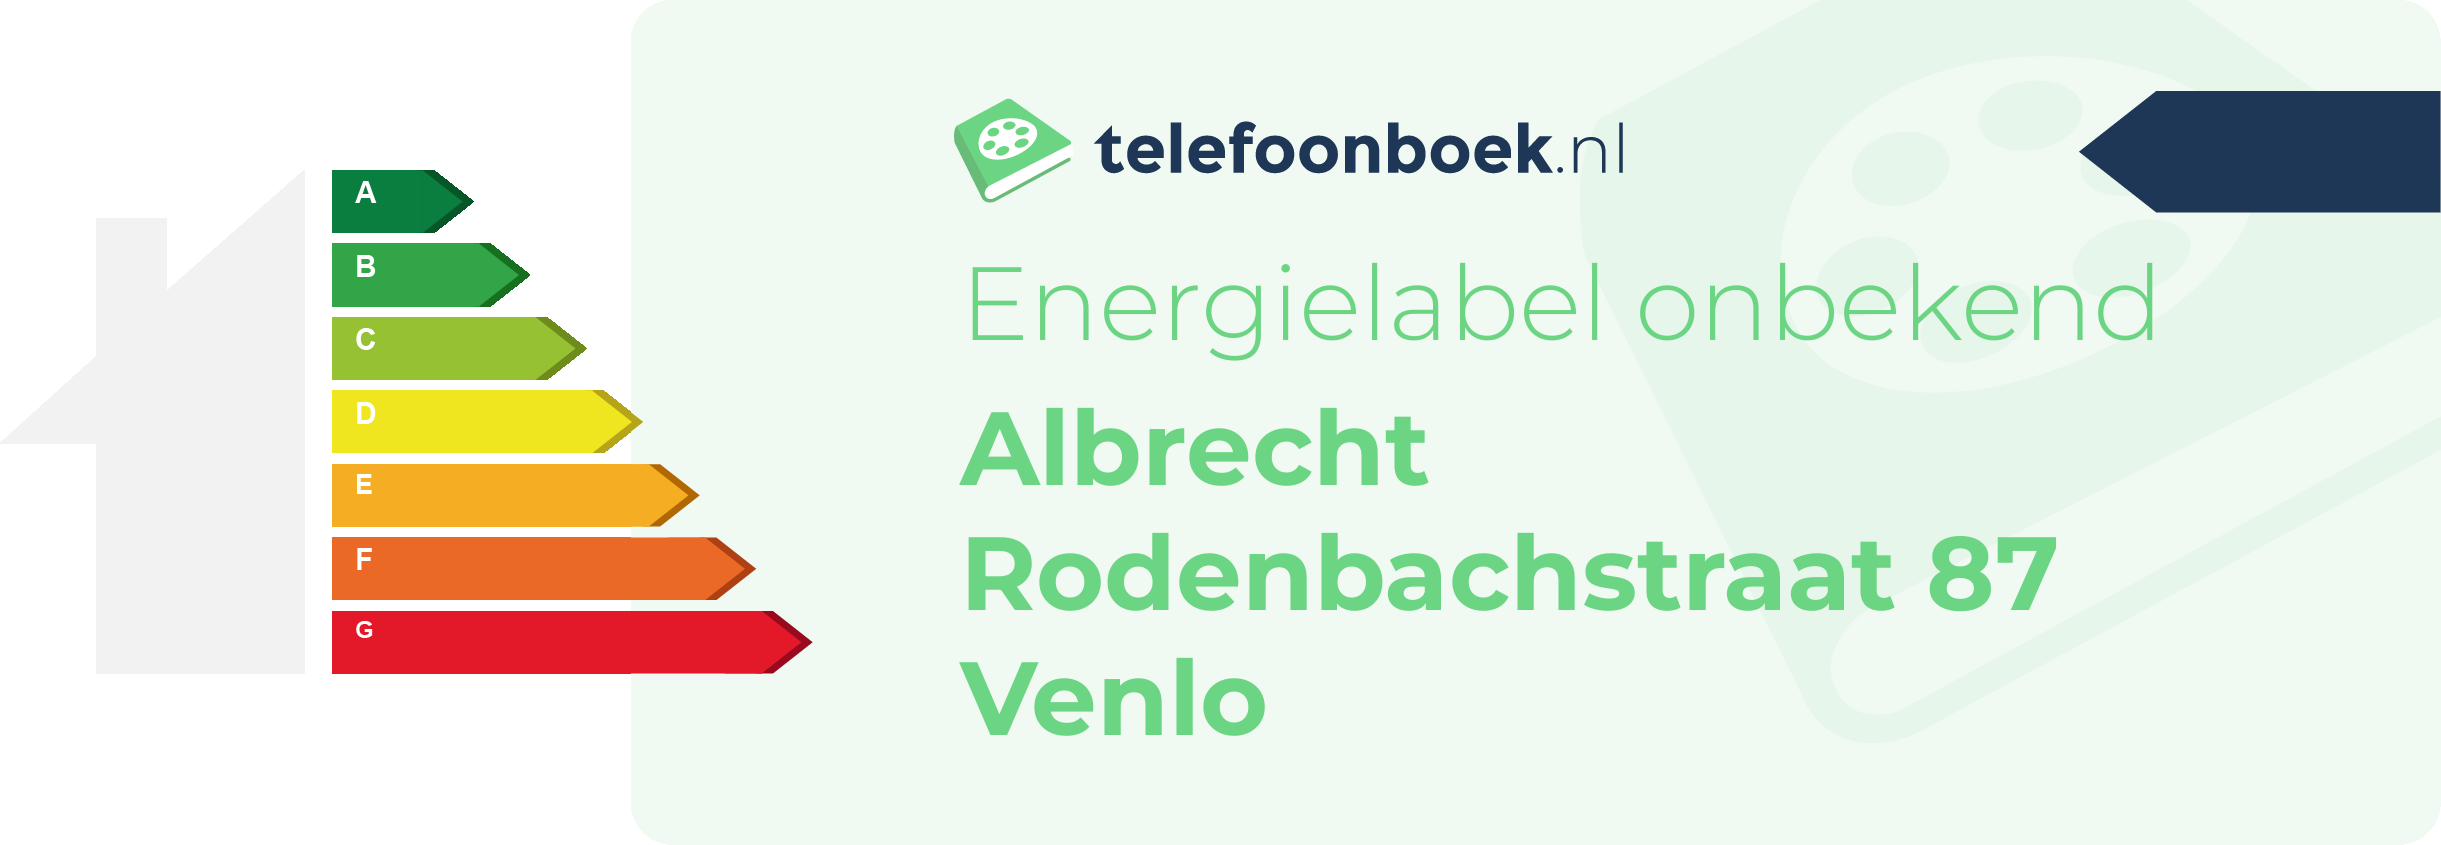 Energielabel Albrecht Rodenbachstraat 87 Venlo